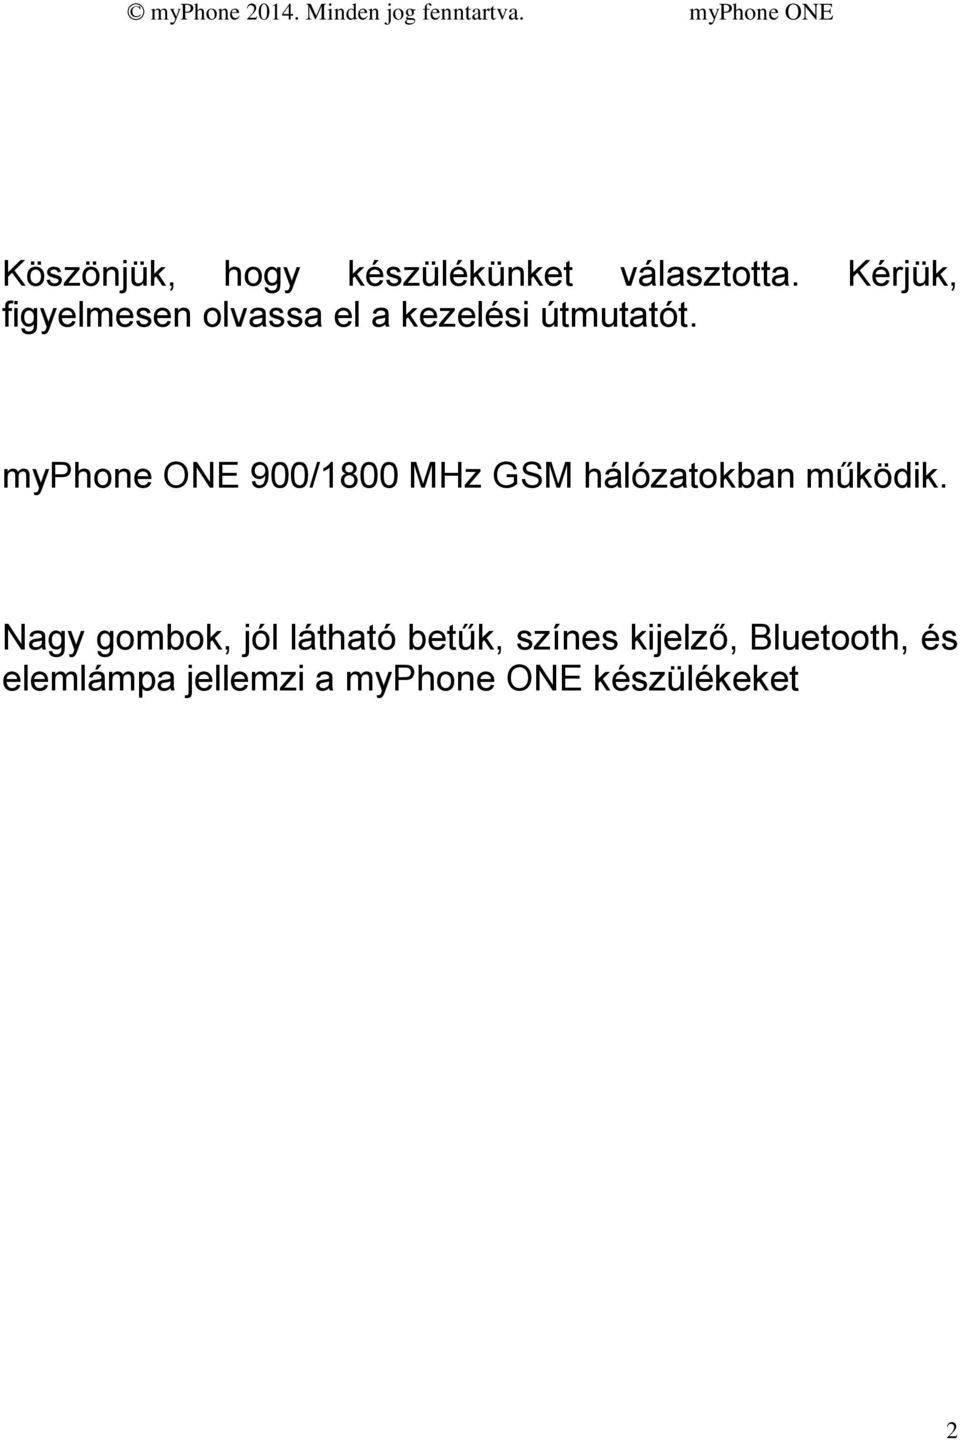 myphone ONE 900/1800 MHz GSM hálózatokban működik.